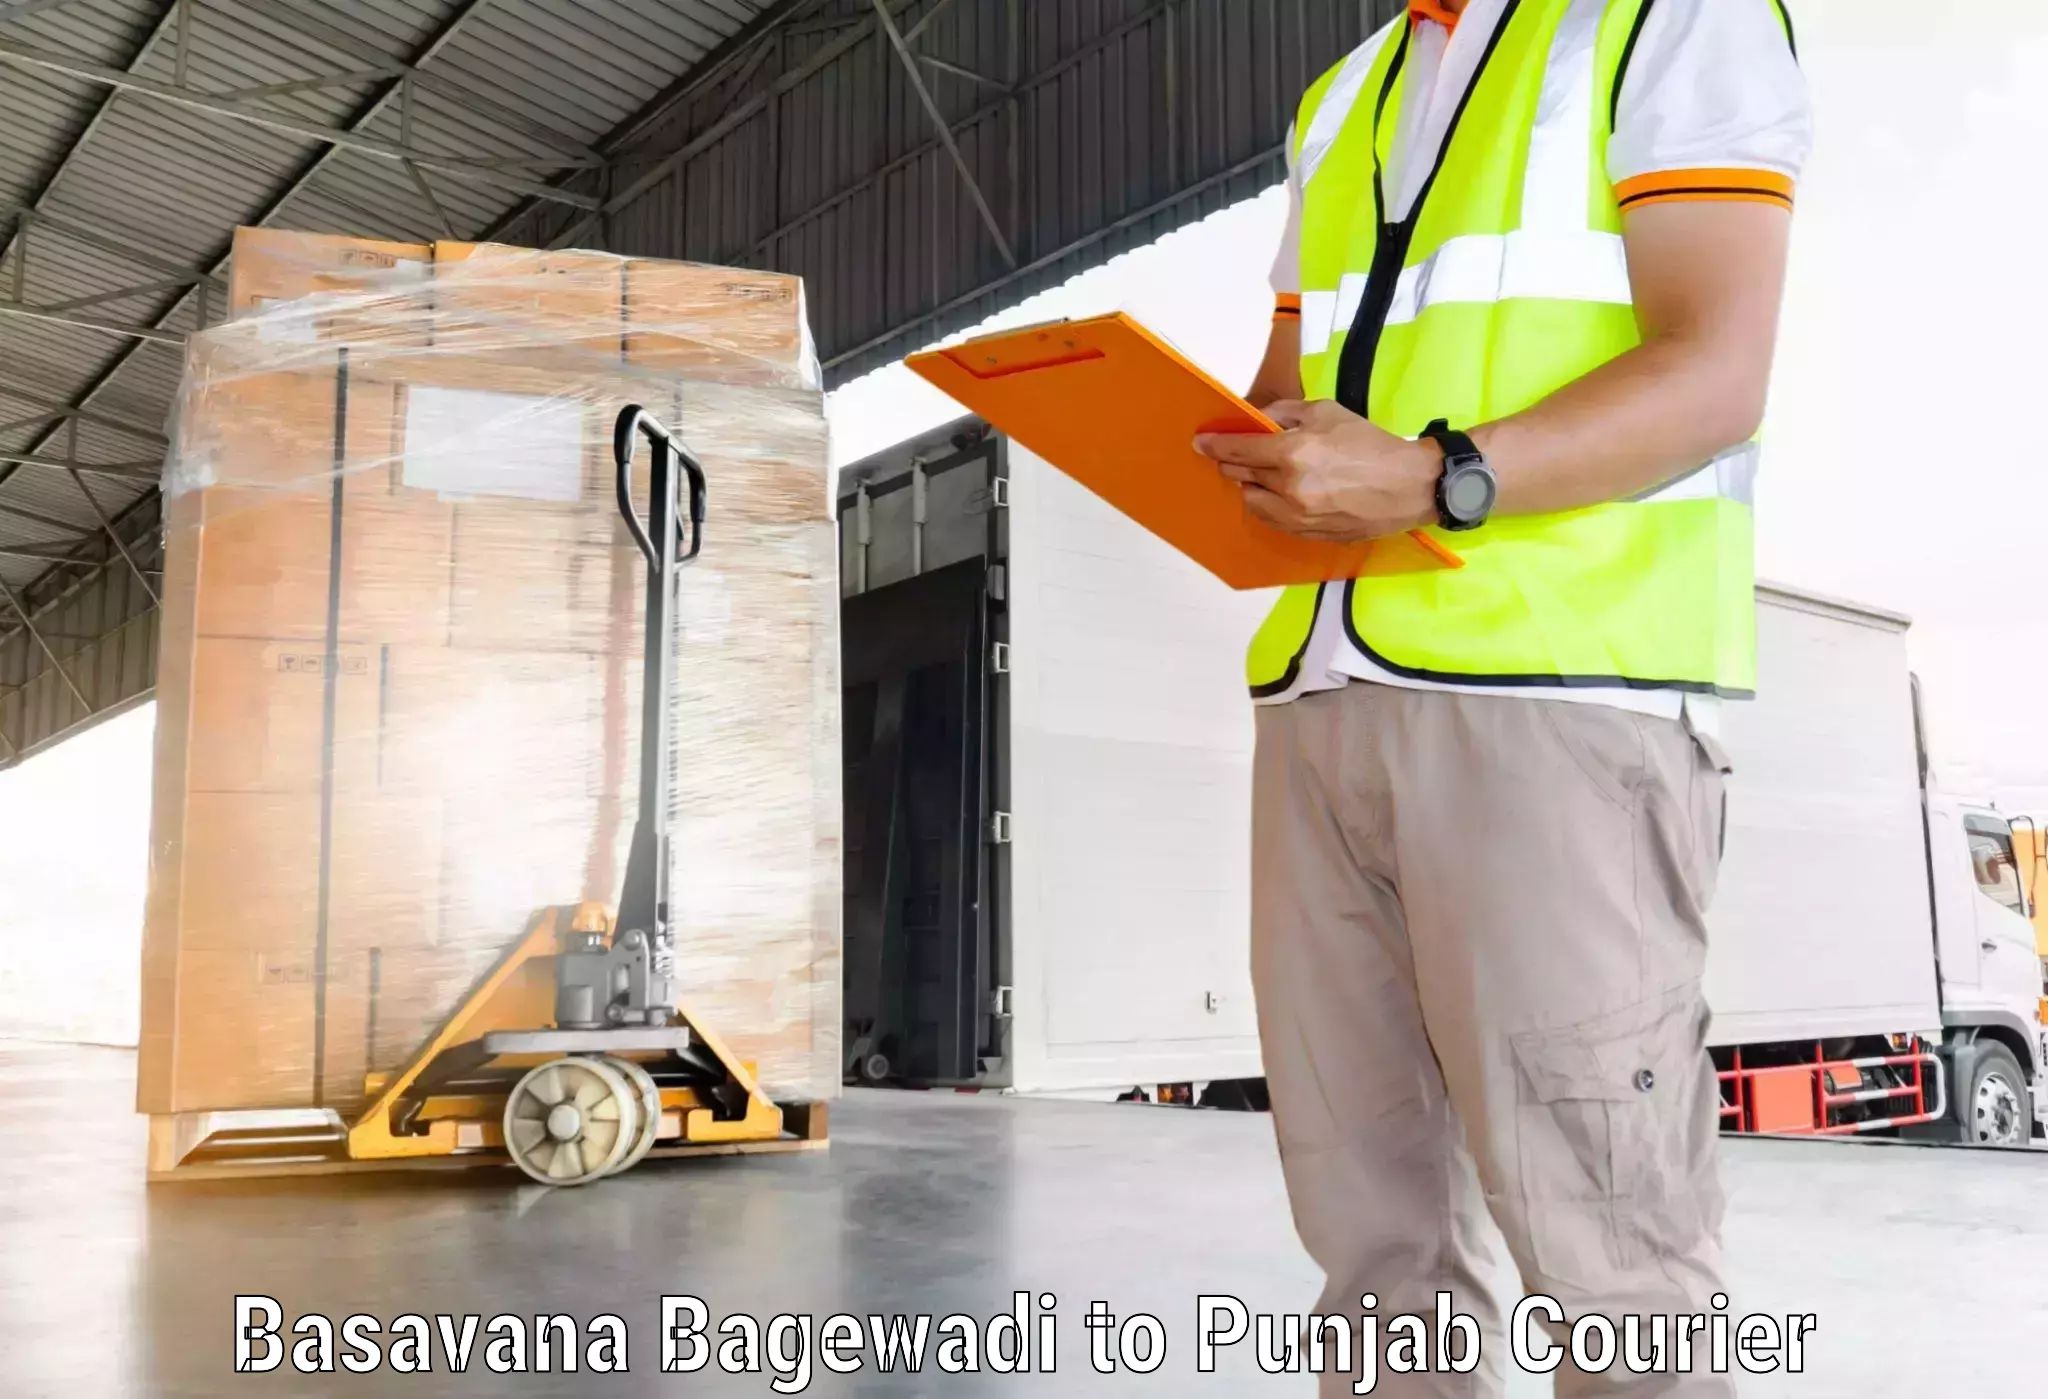 Secure shipping methods Basavana Bagewadi to Punjab